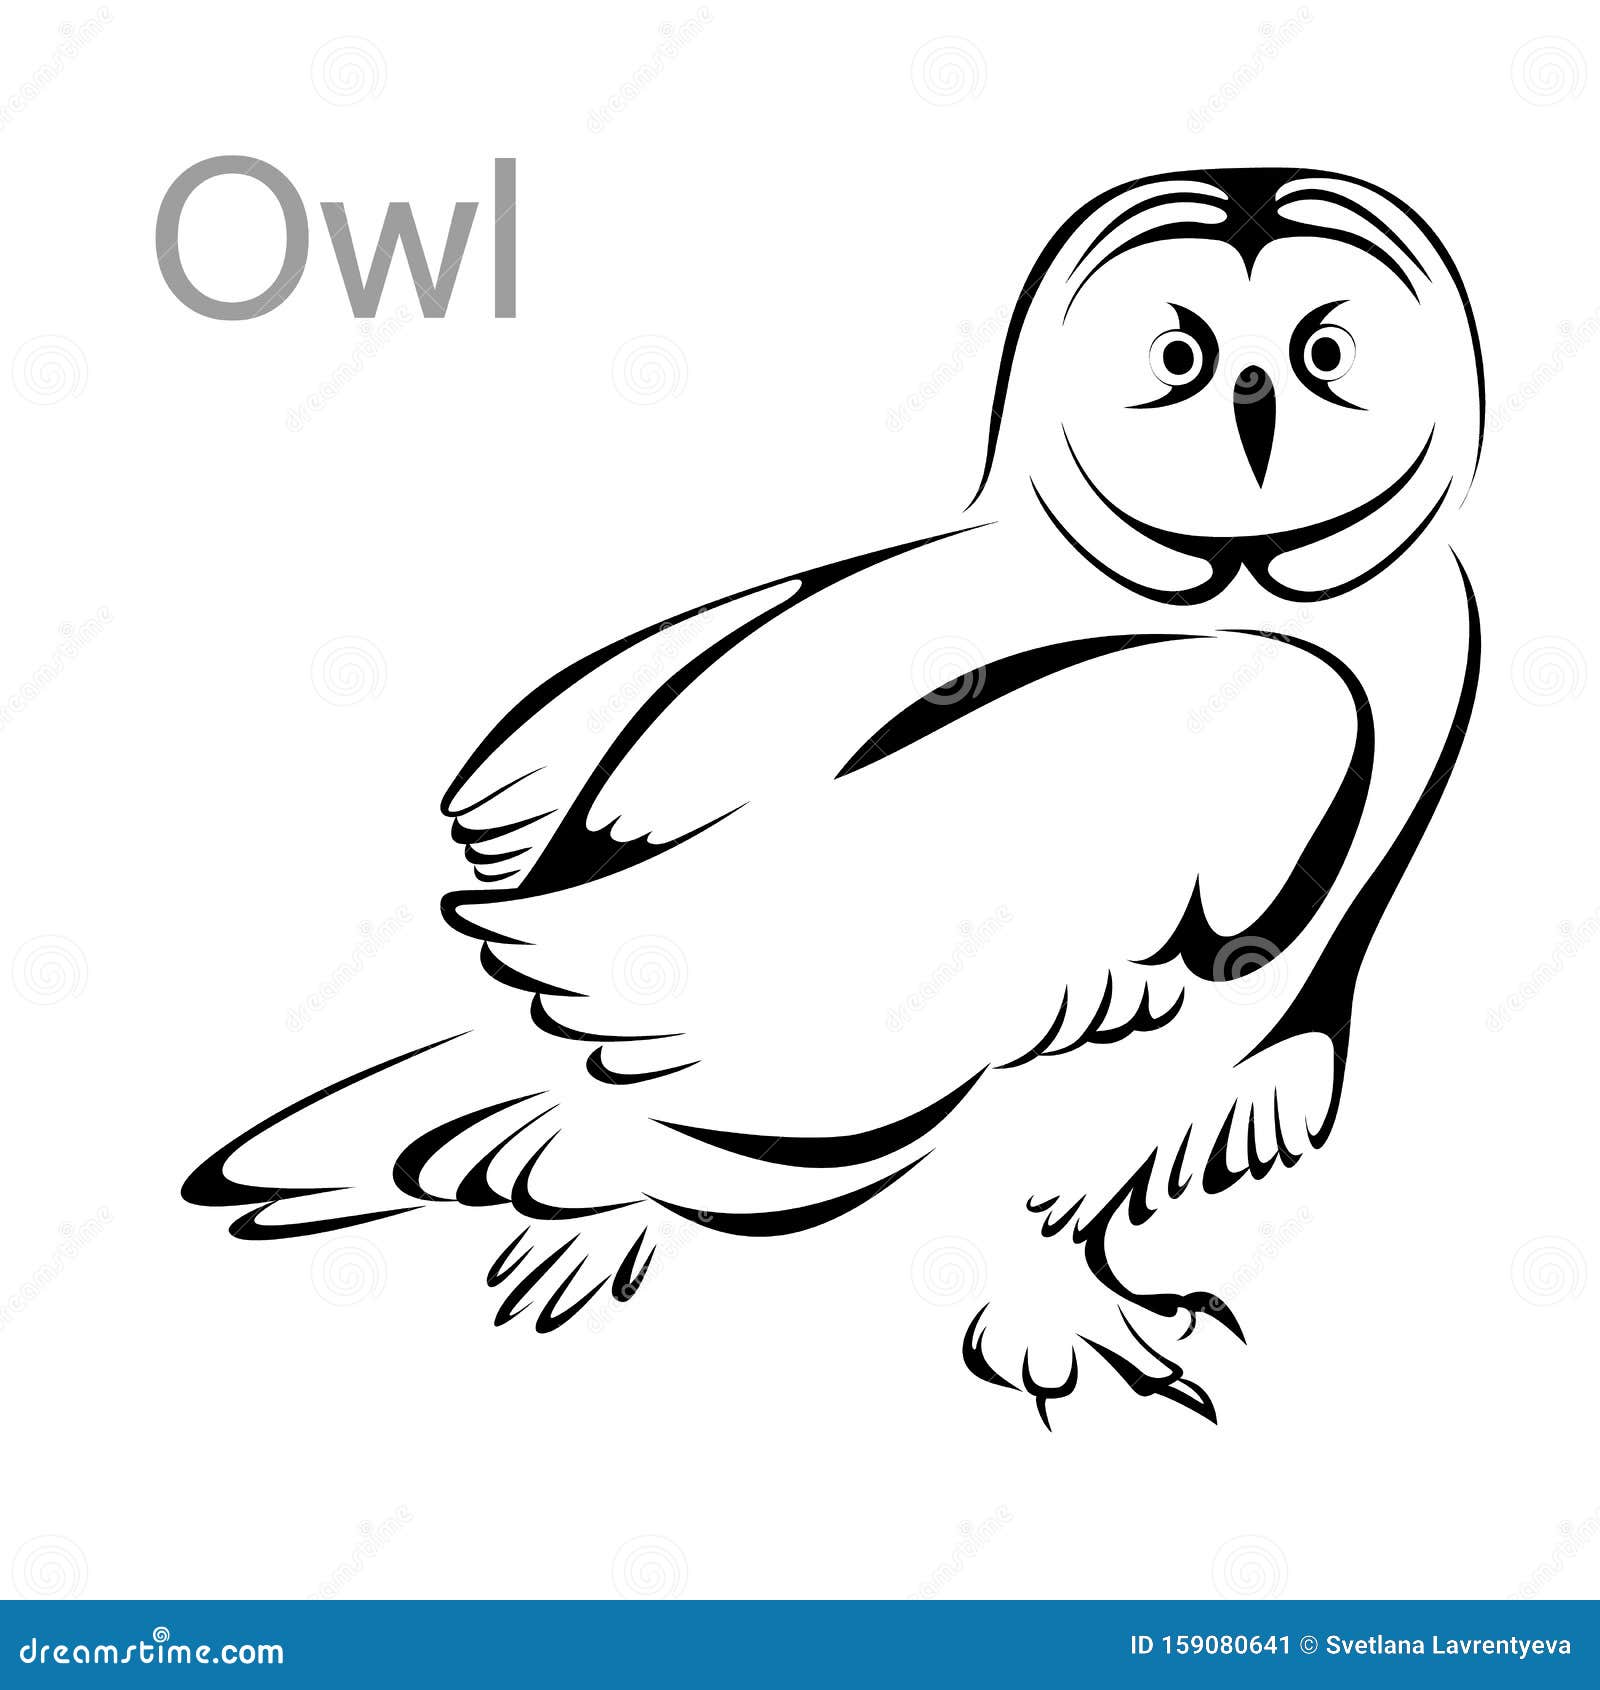 Owl Temporary Tattoo - Etsy